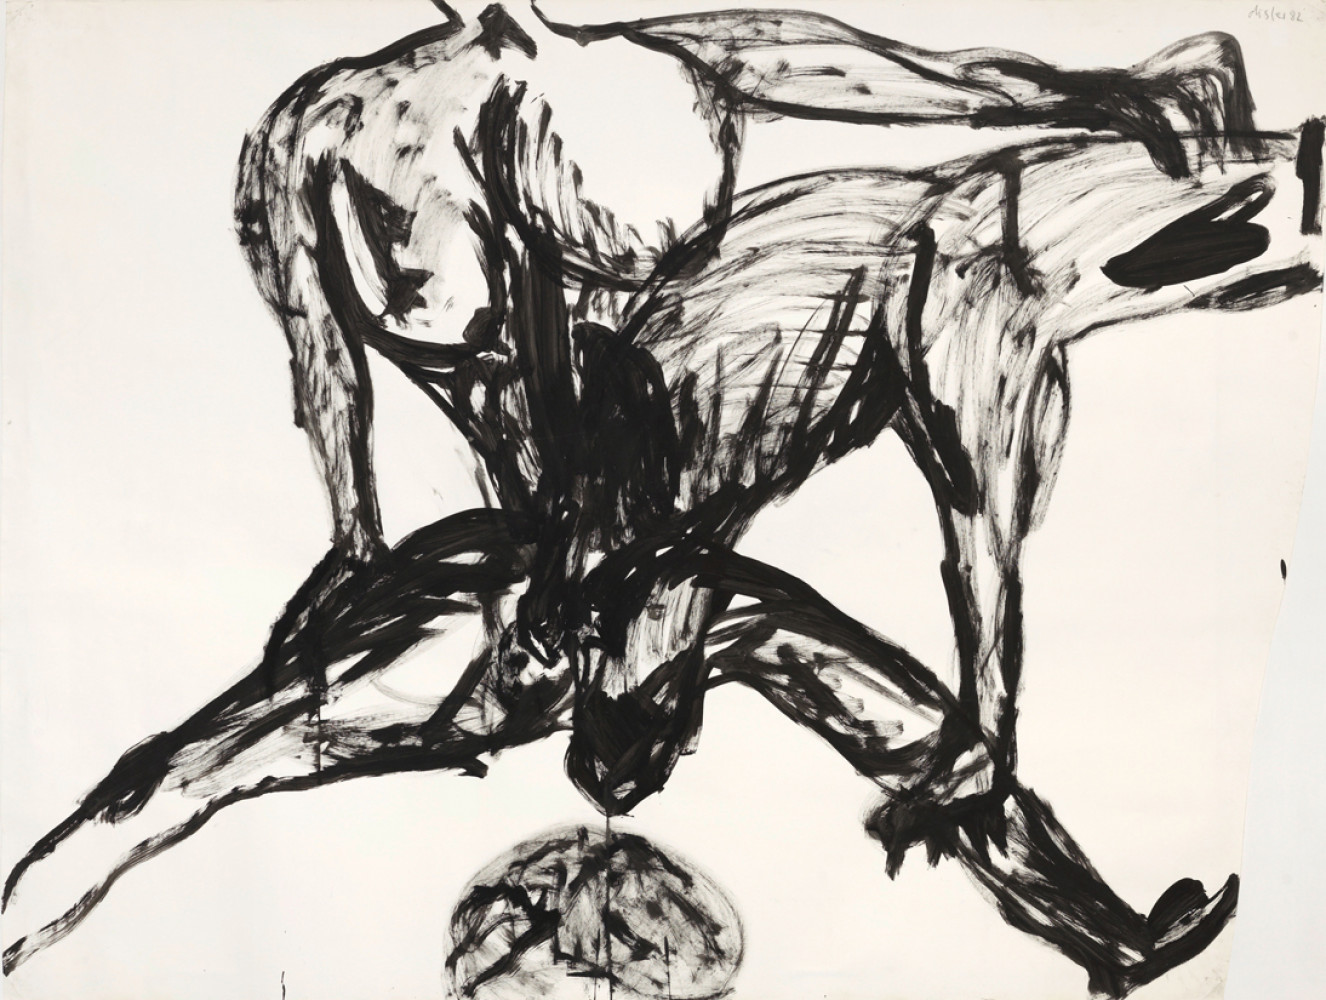 Martin Disler, ‘Untitled’, 1982, Ink on paper